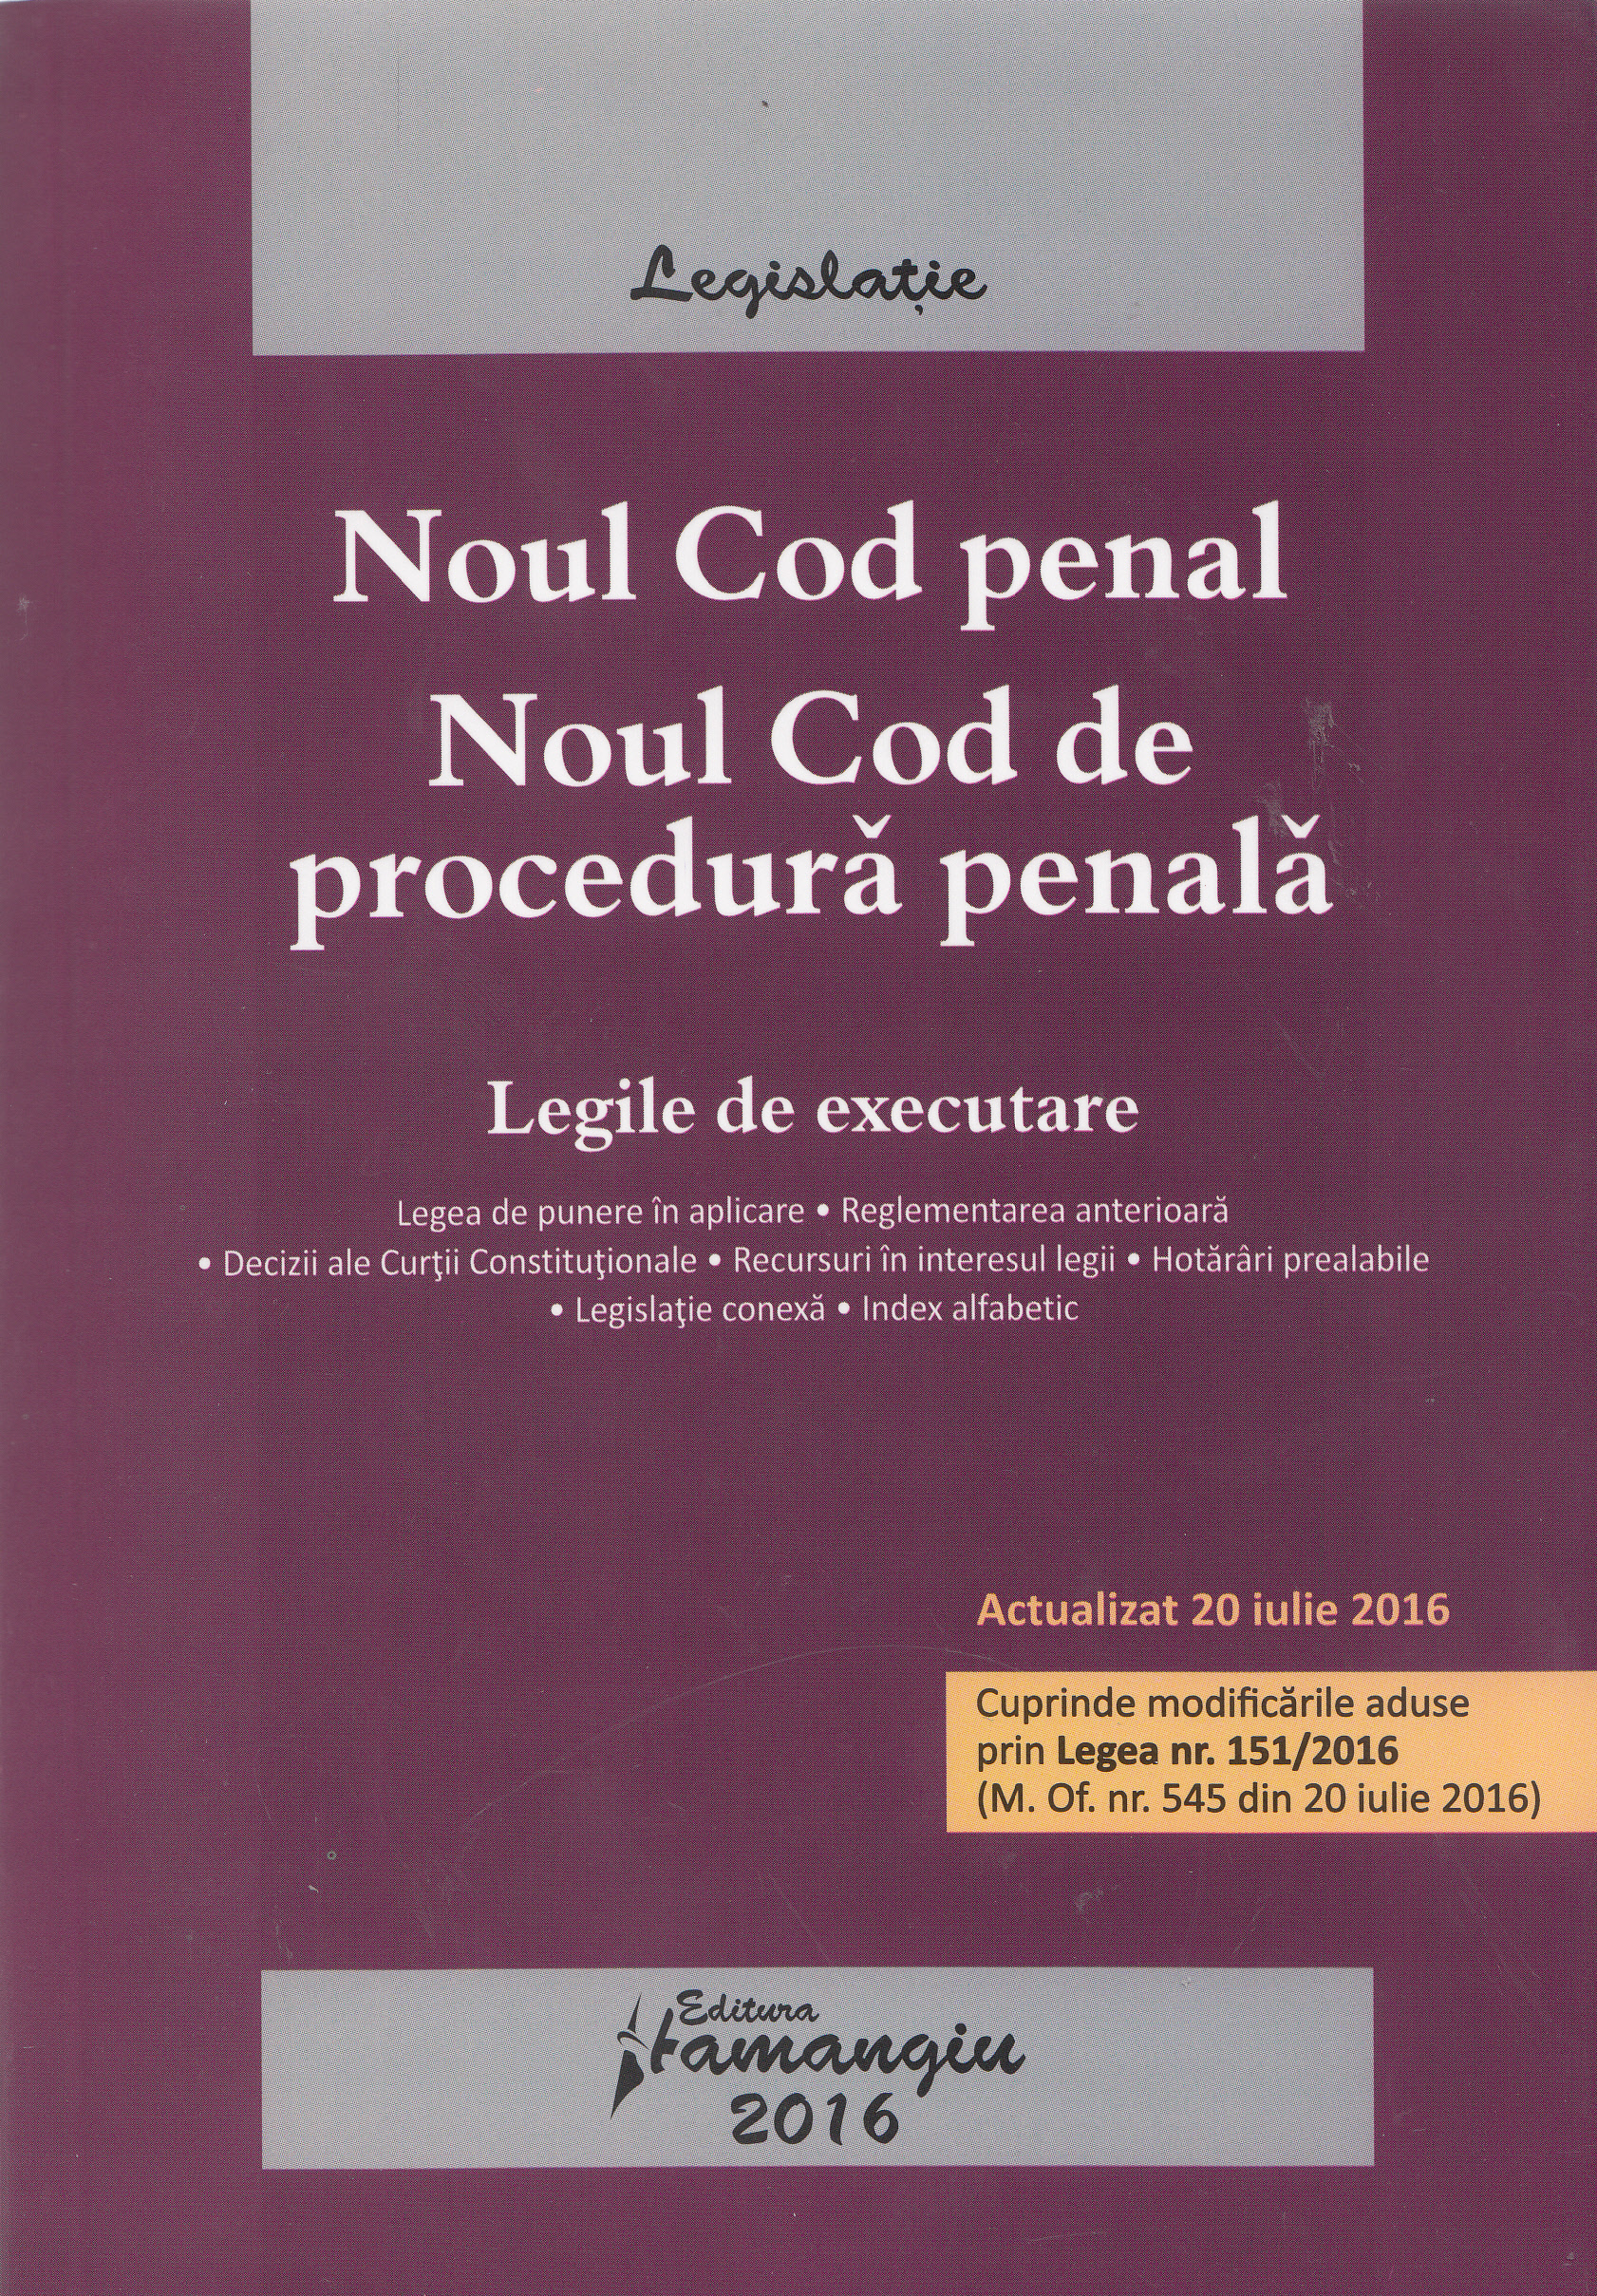 Noul Cod penal. Noul Cod de procedura penala act. 20 iulie 2016